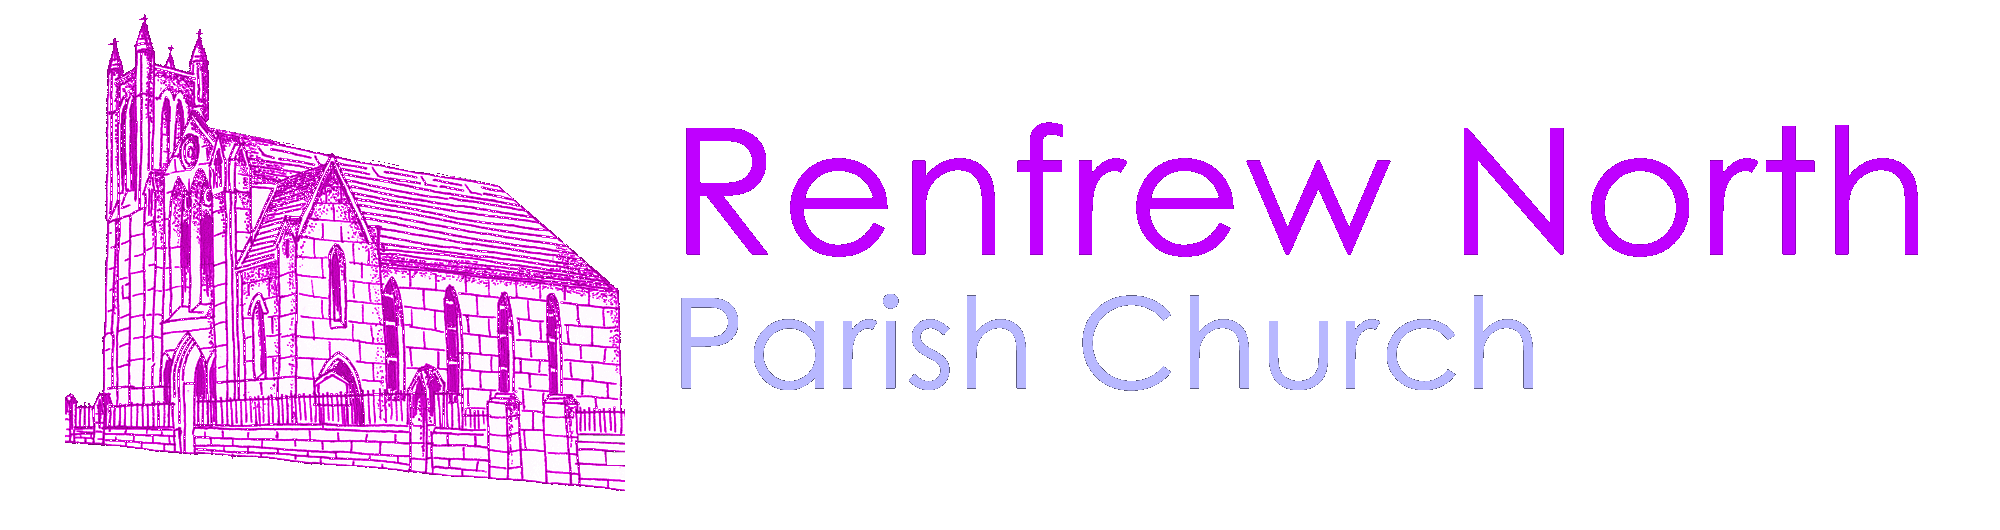 Renfrew North Parish Church